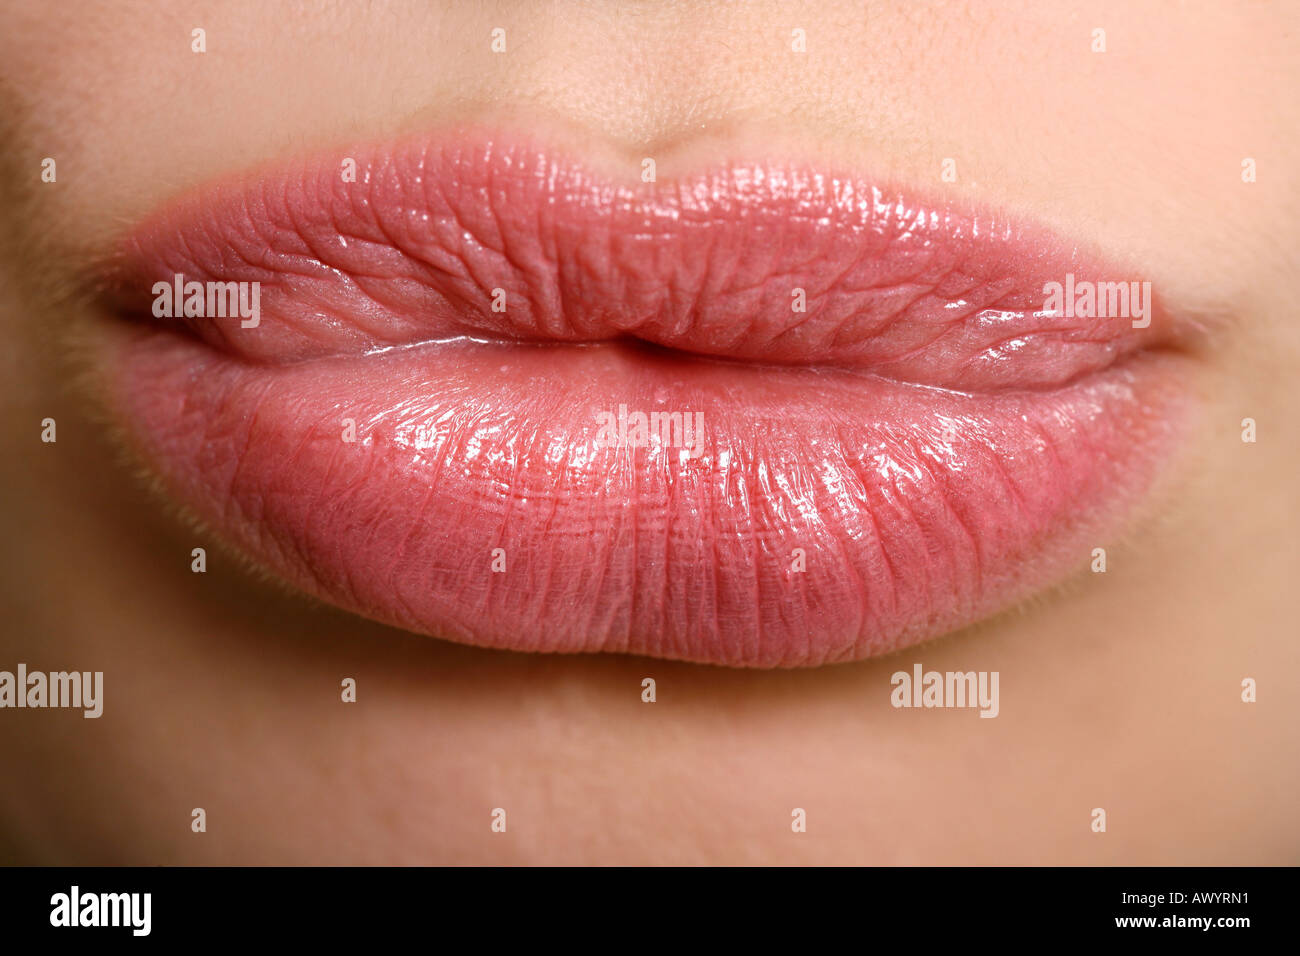 Beauty-Shot von Frau s Lippen Stockfoto